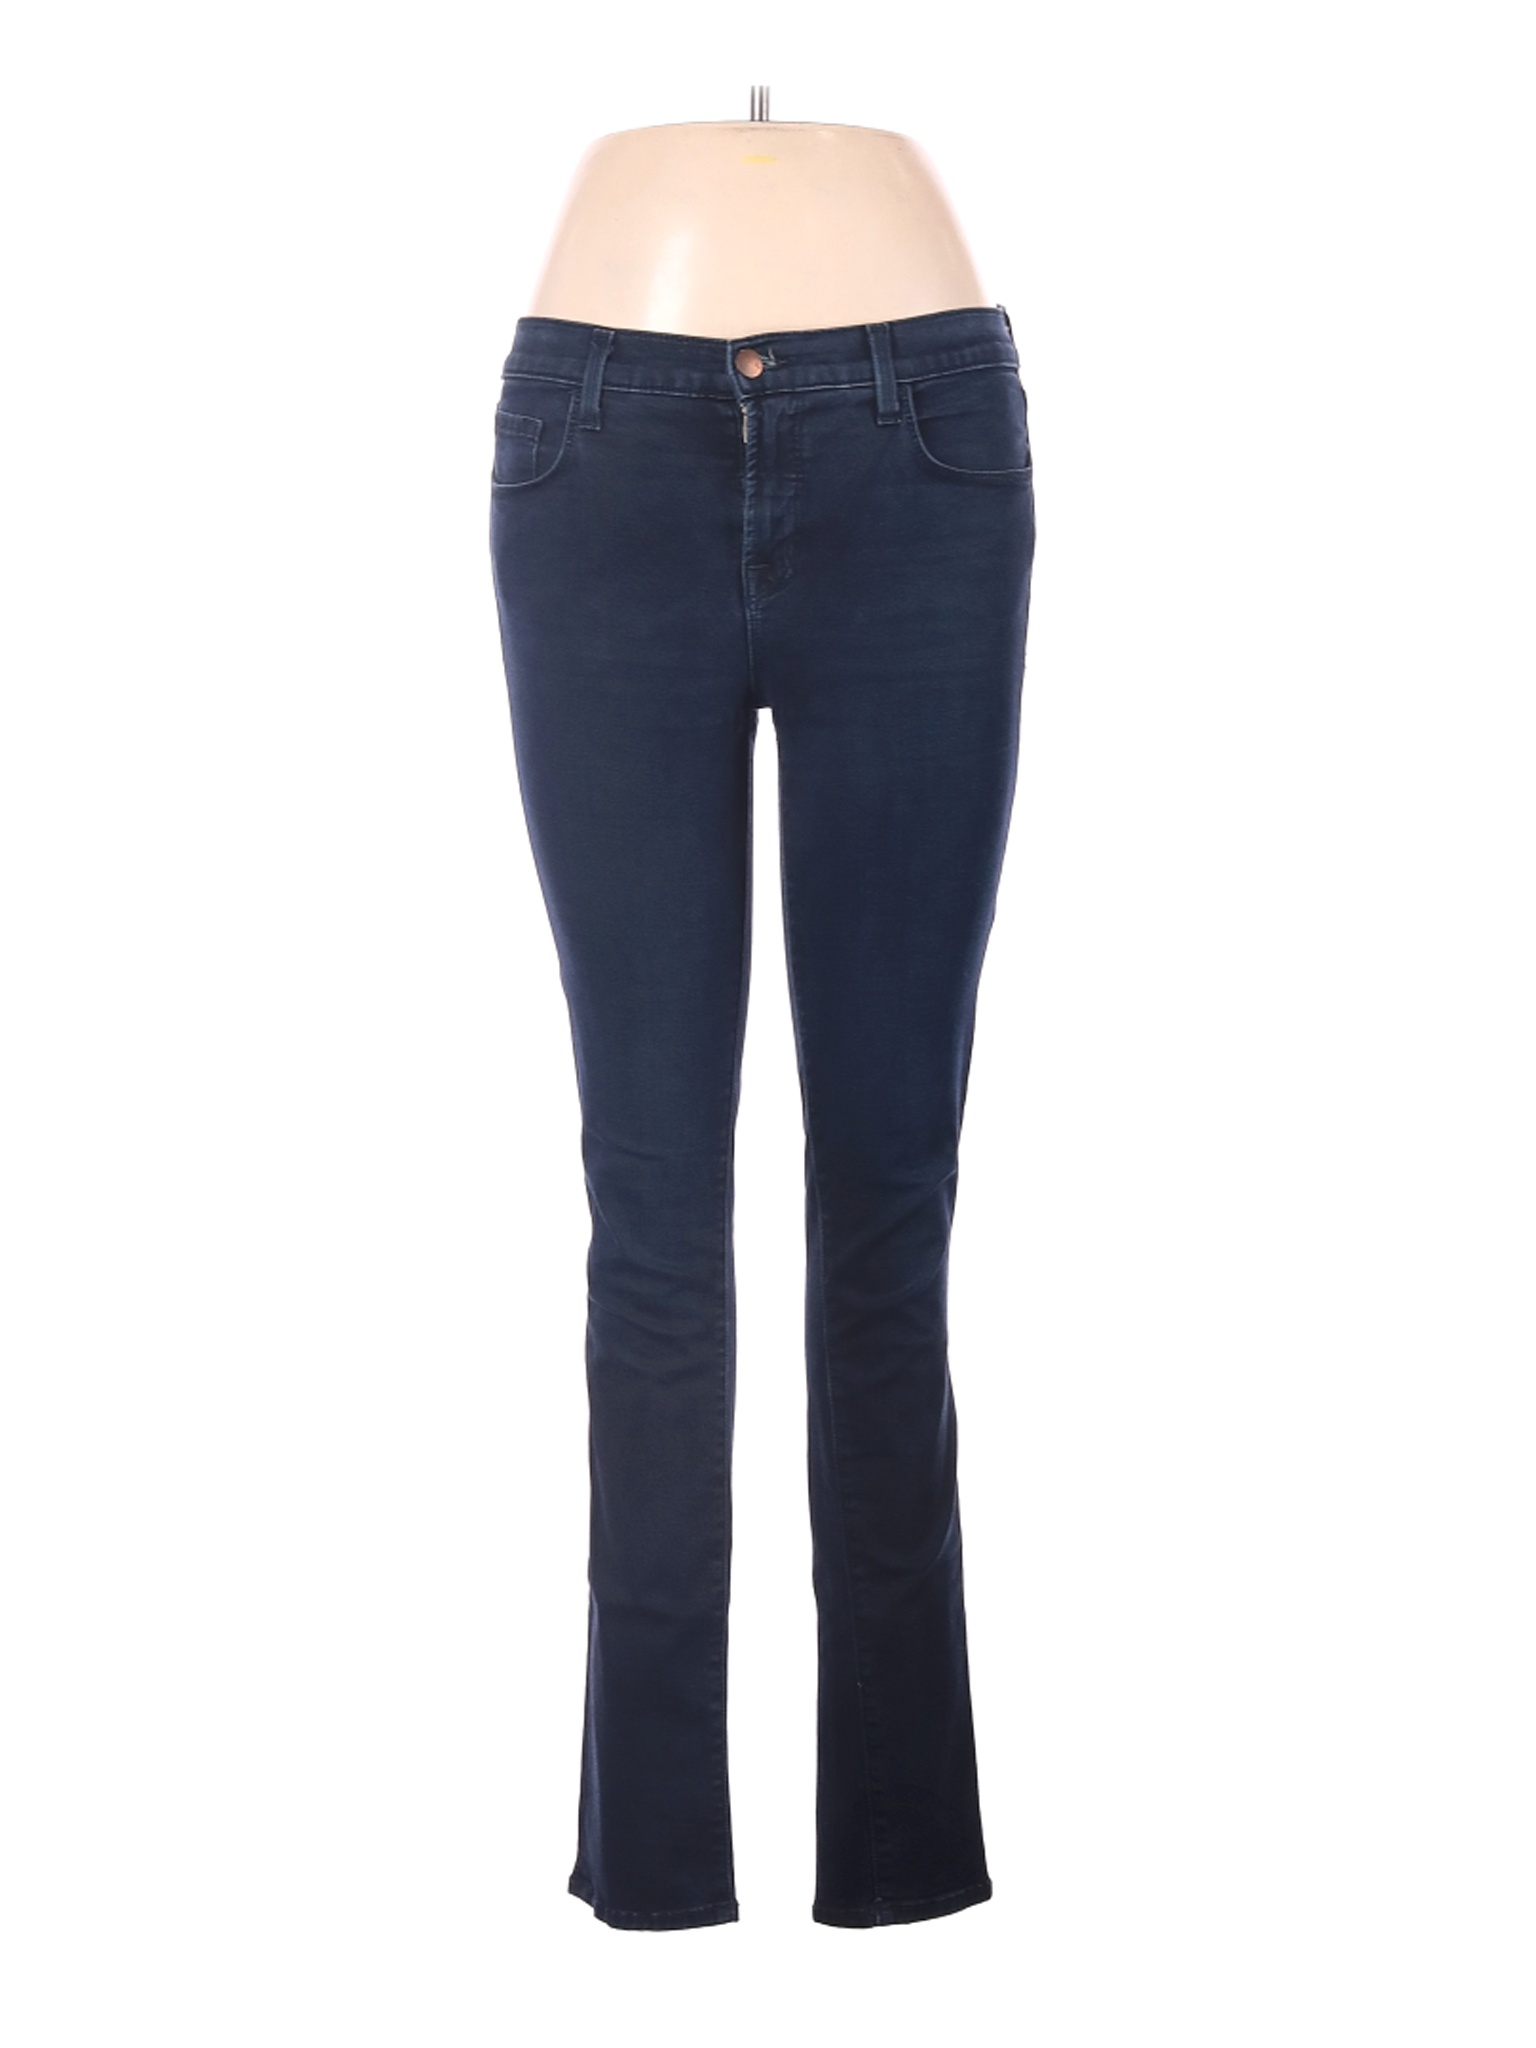 J Brand Women Blue Jeans 28W | eBay